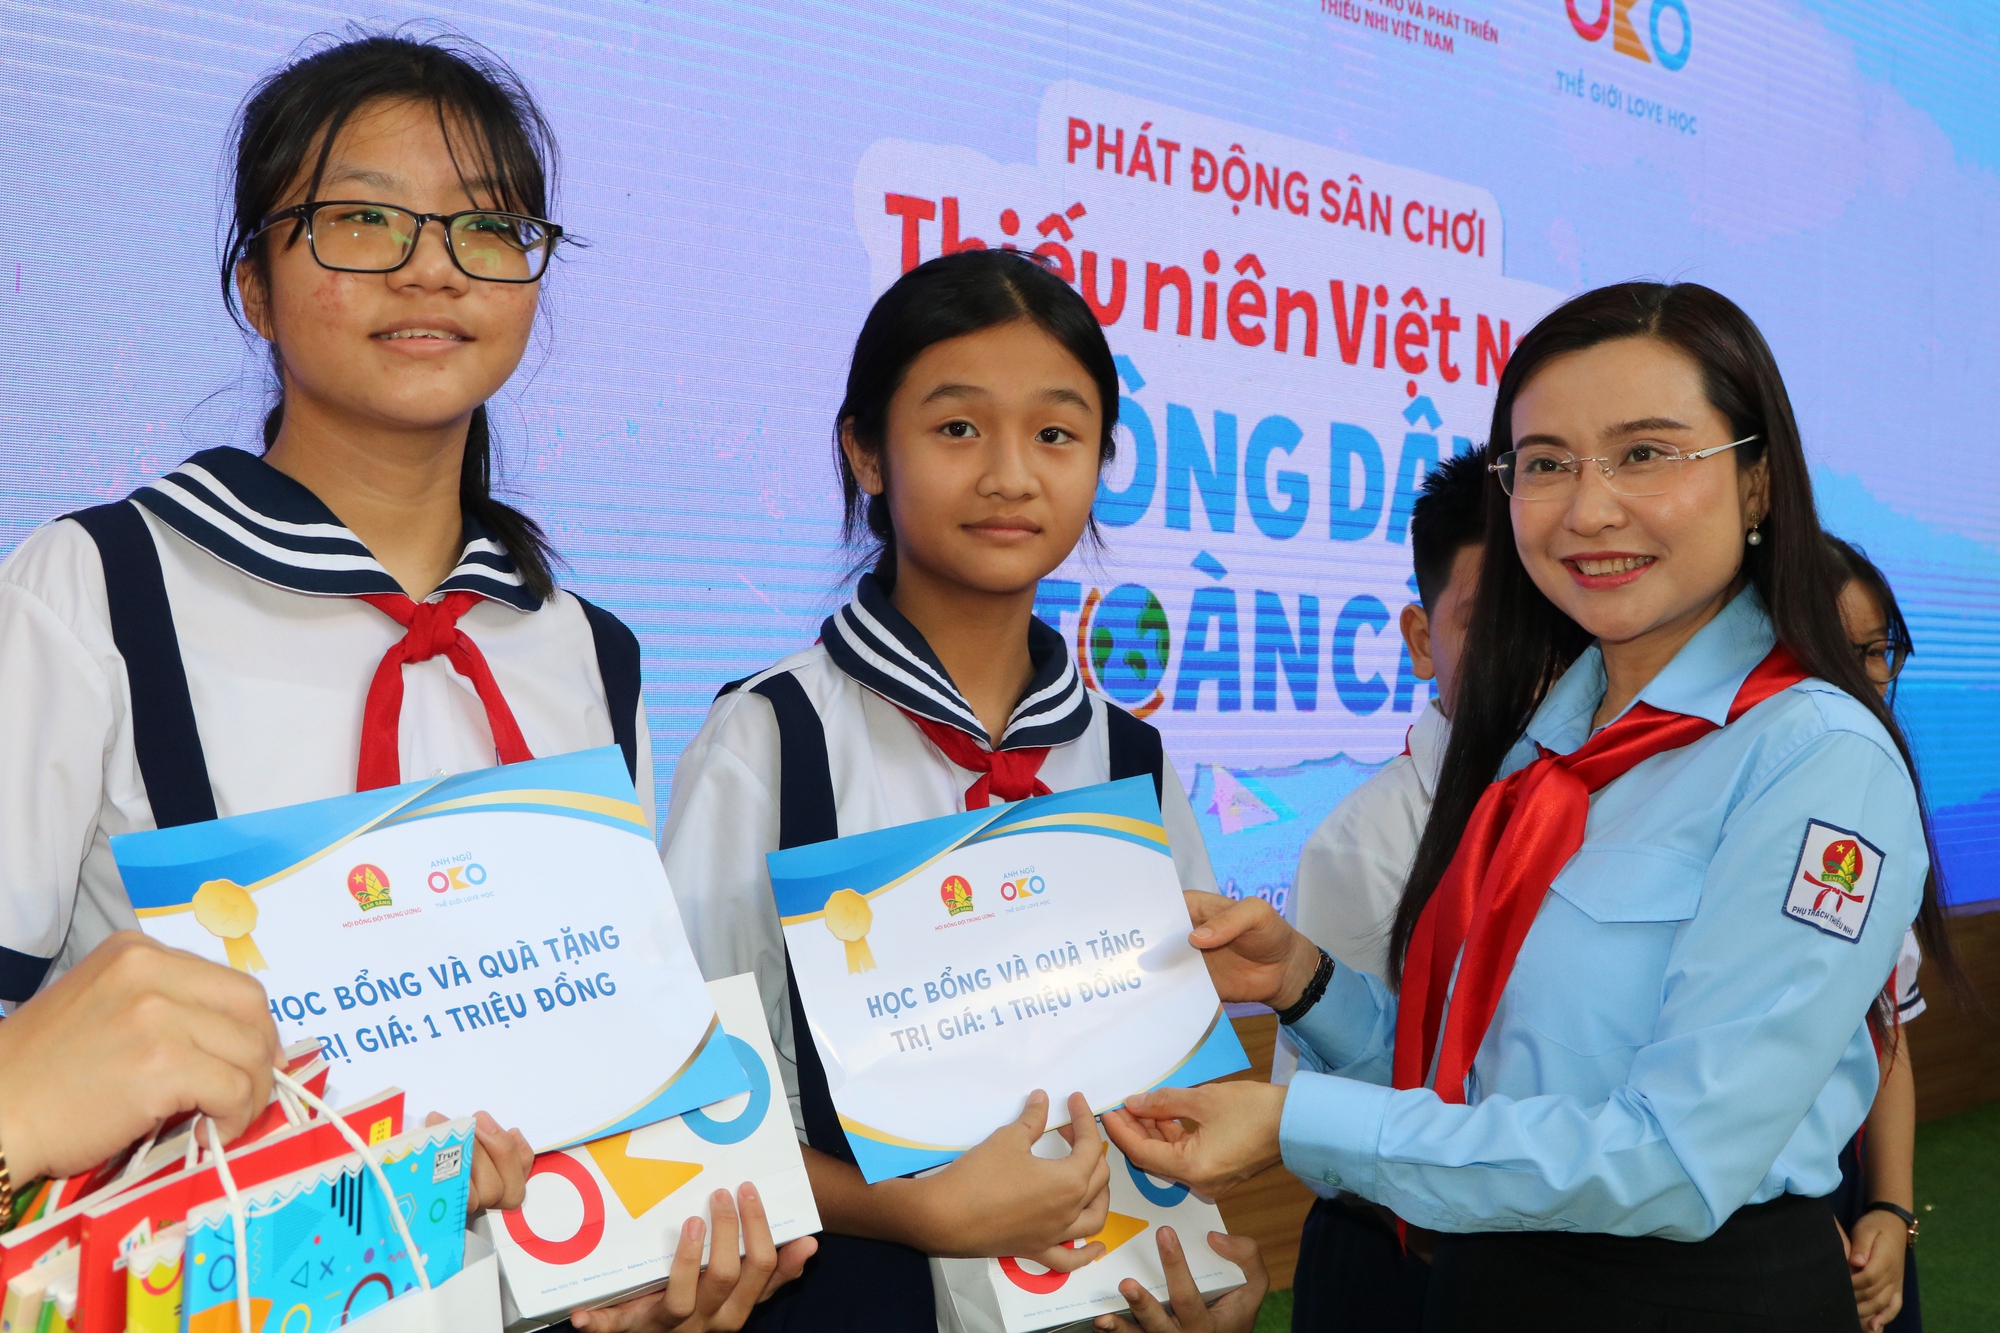 Phát động sân chơi ‘Thiếu niên Việt Nam - Công dân toàn cầu’ trên toàn quốc - Ảnh 1.